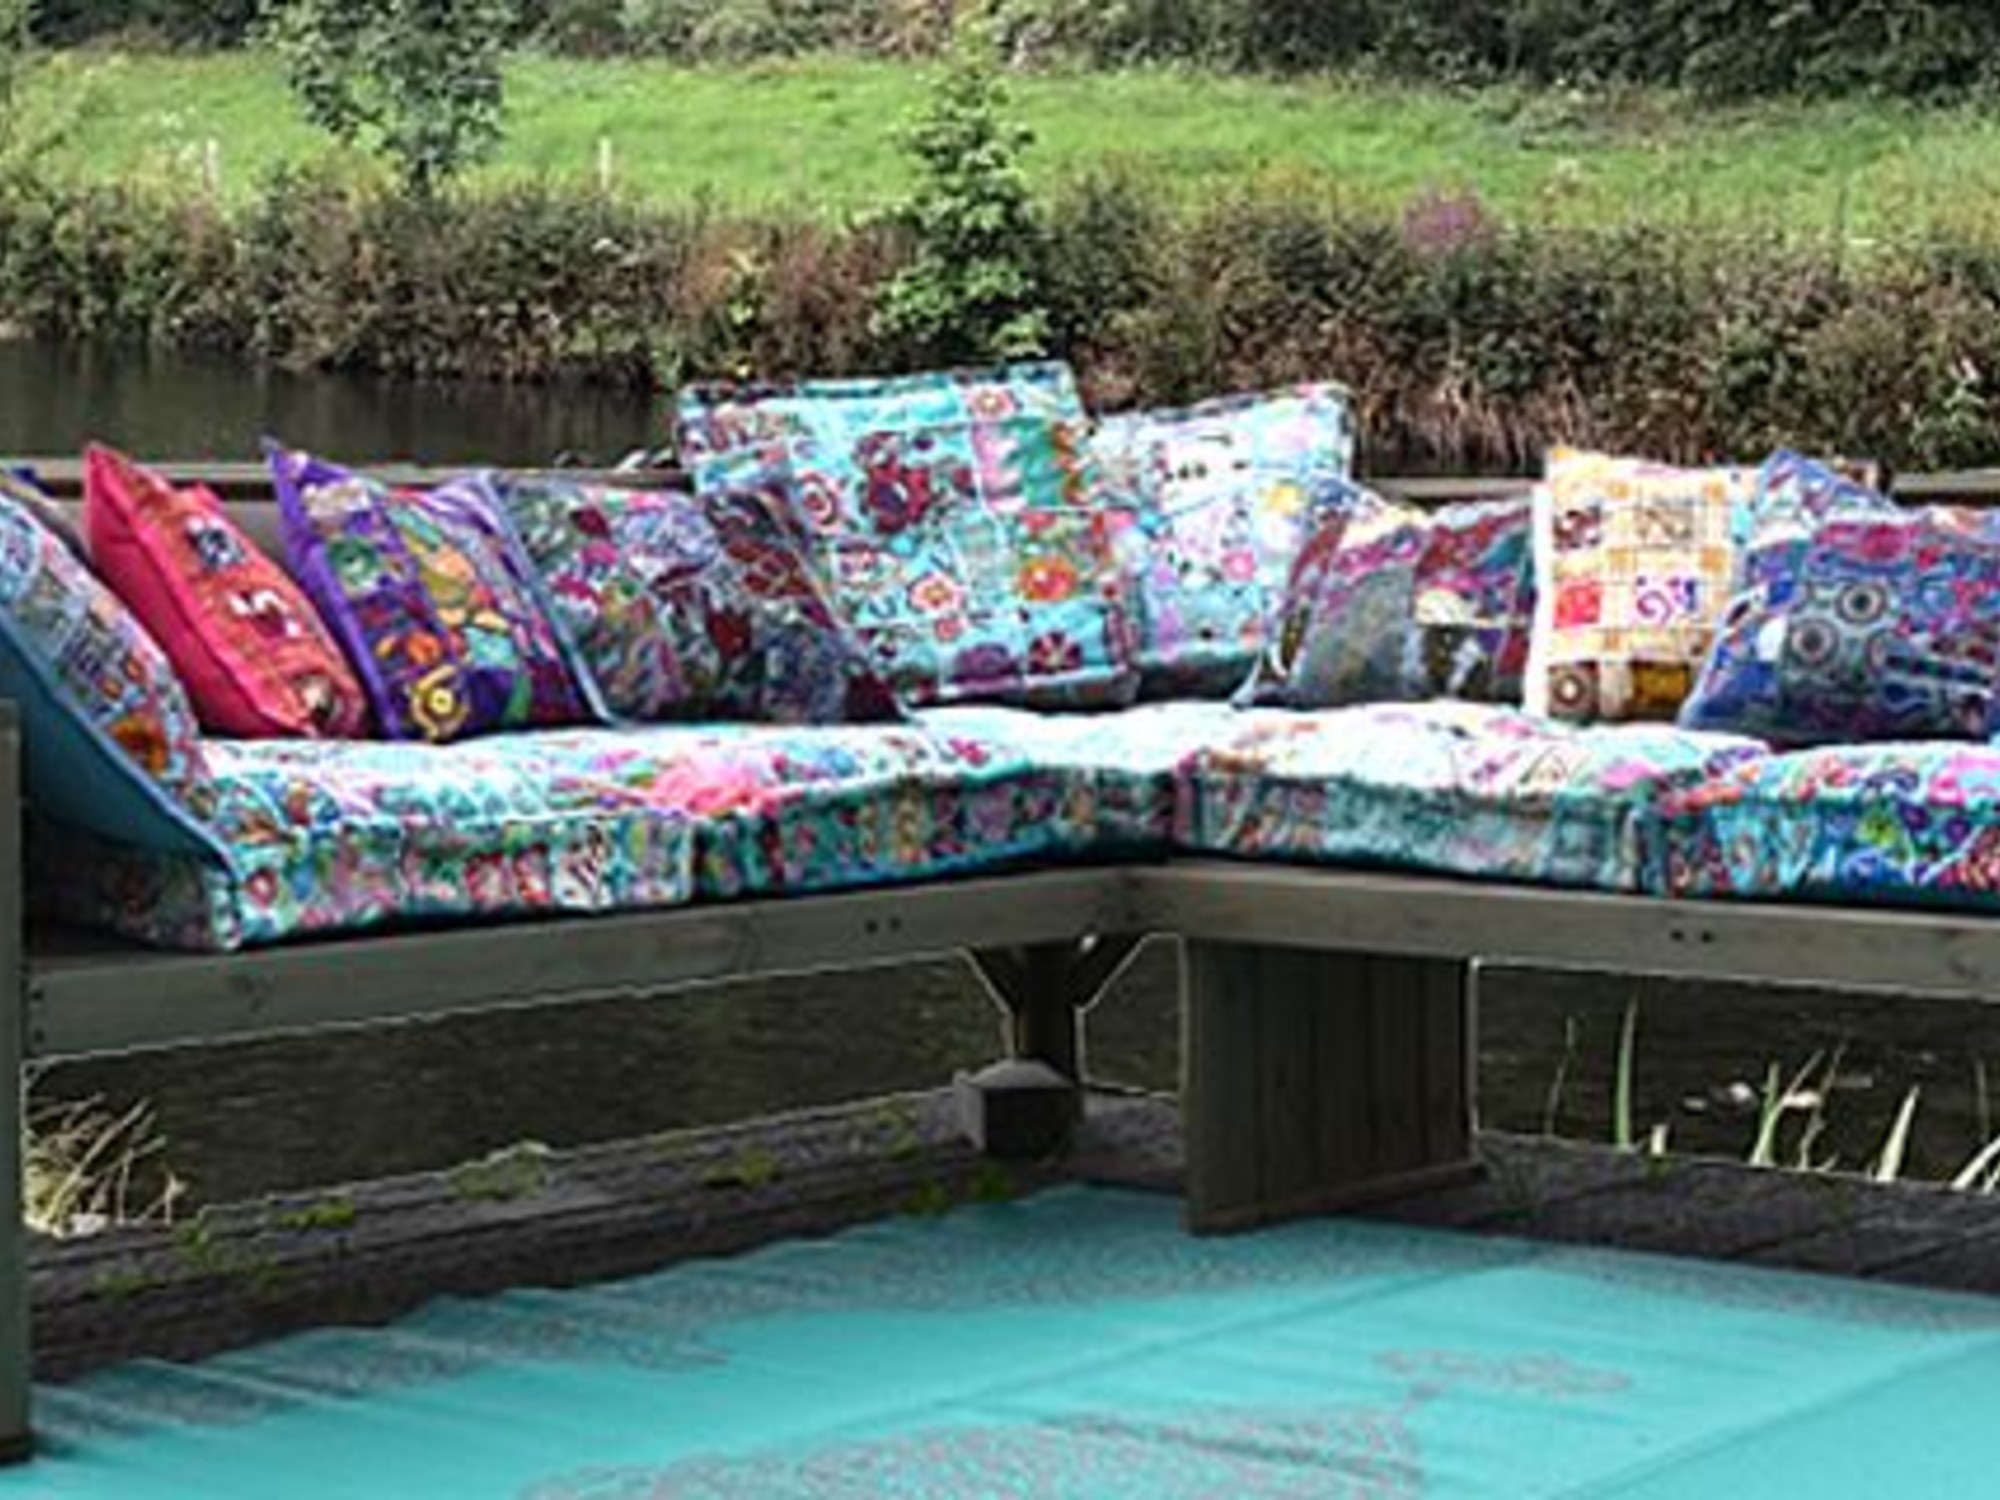 park Maand Ouderling Mooie kleurrijke matraskussens voor op een palletbank of tuinbank - Merel  in Wonderland